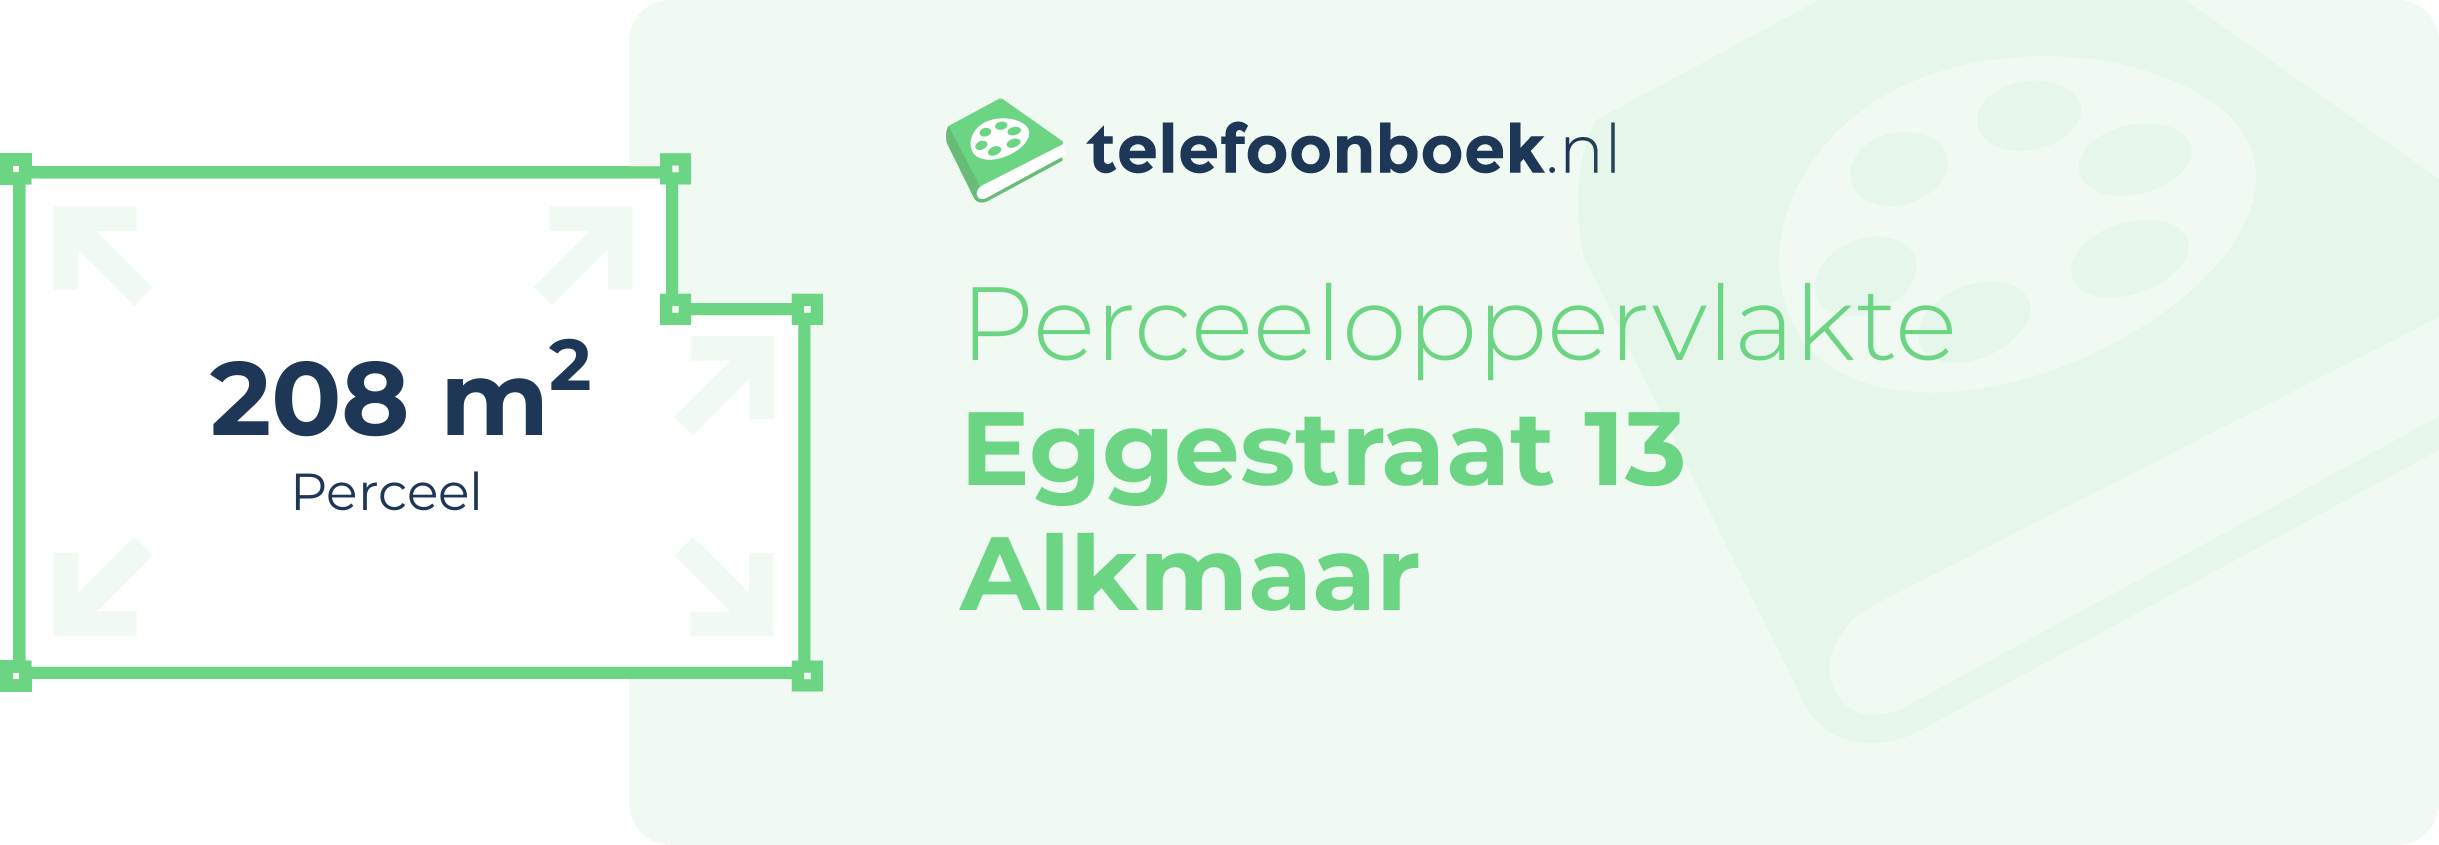 Perceeloppervlakte Eggestraat 13 Alkmaar